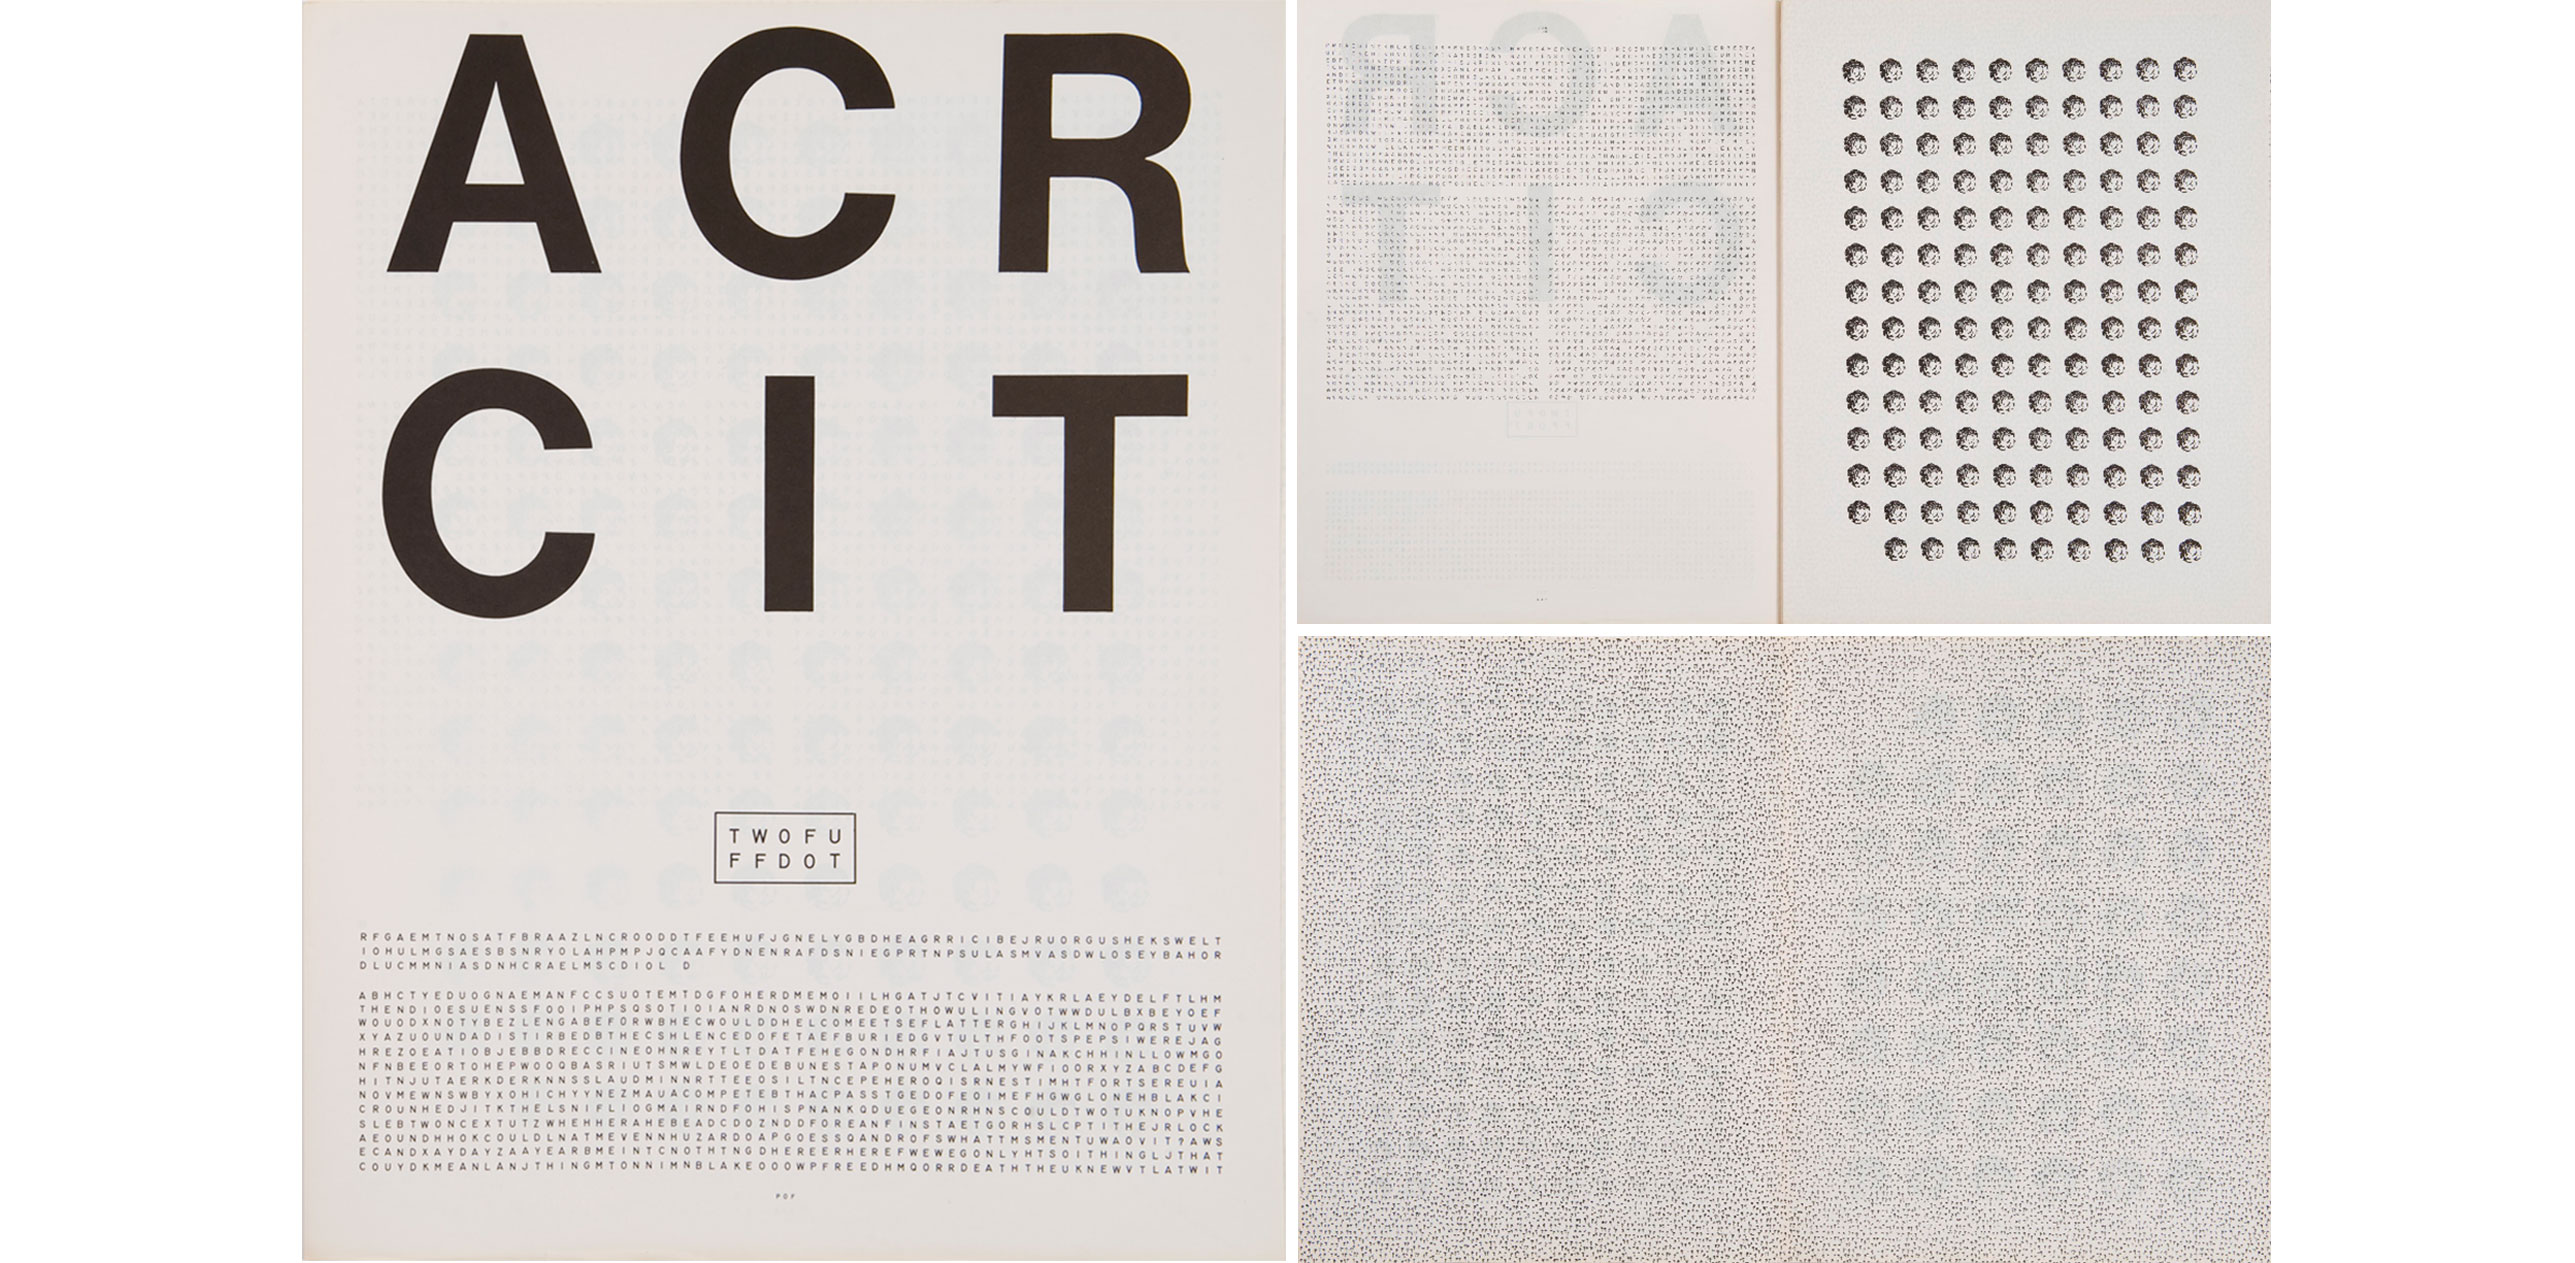 Guy-de-Cointet-ACRIT-revue-1971-reprint-01